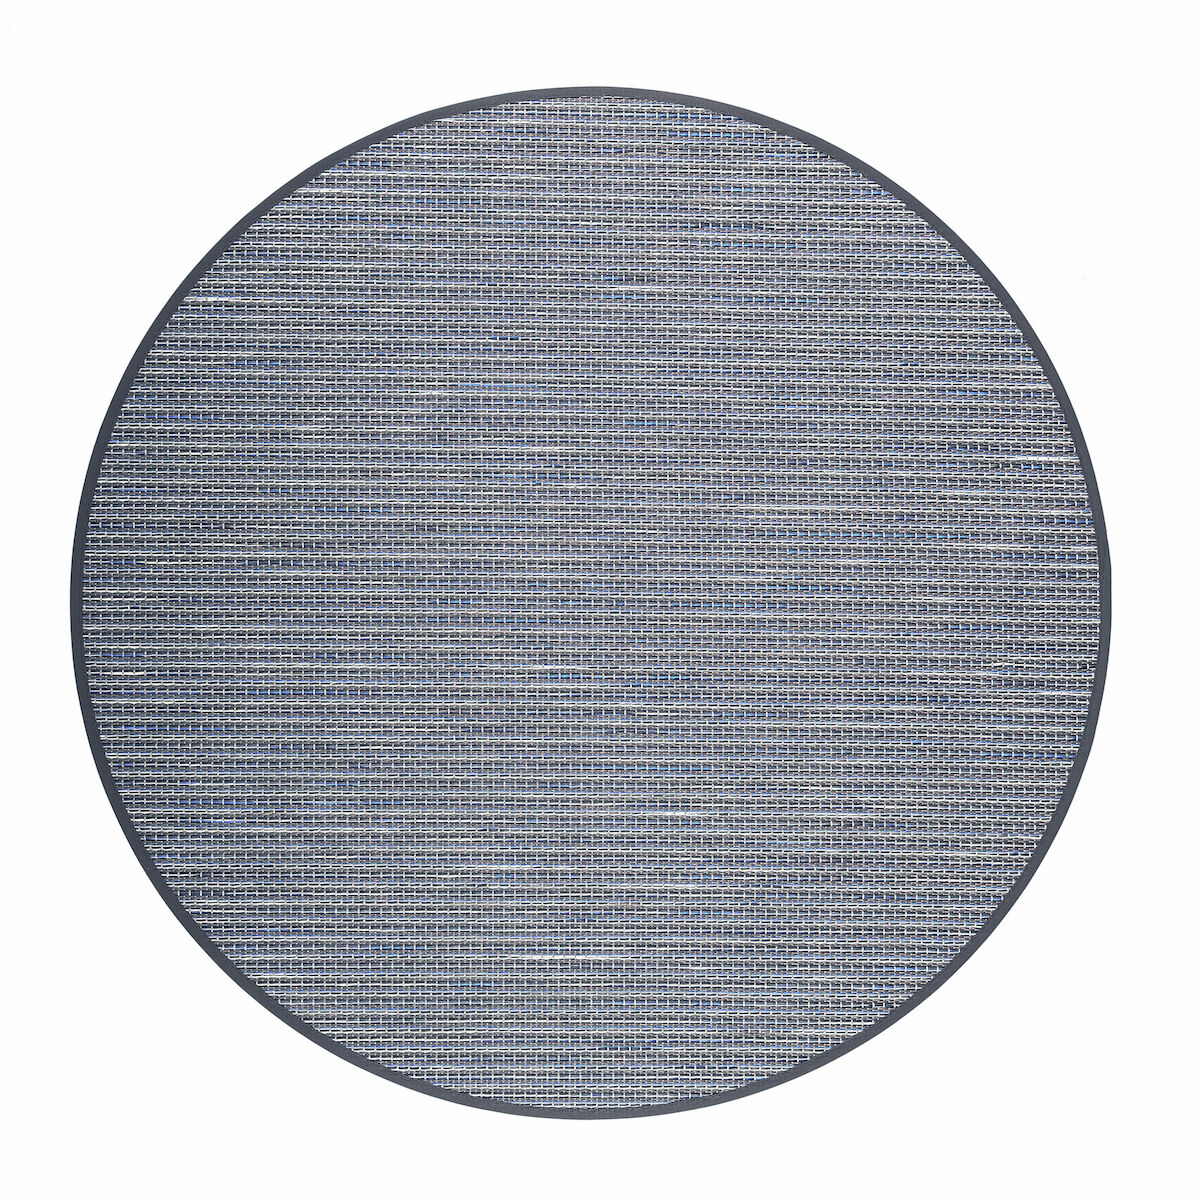 VM Carpet Honka paperinarumatto 133 cm pyöreä sininen